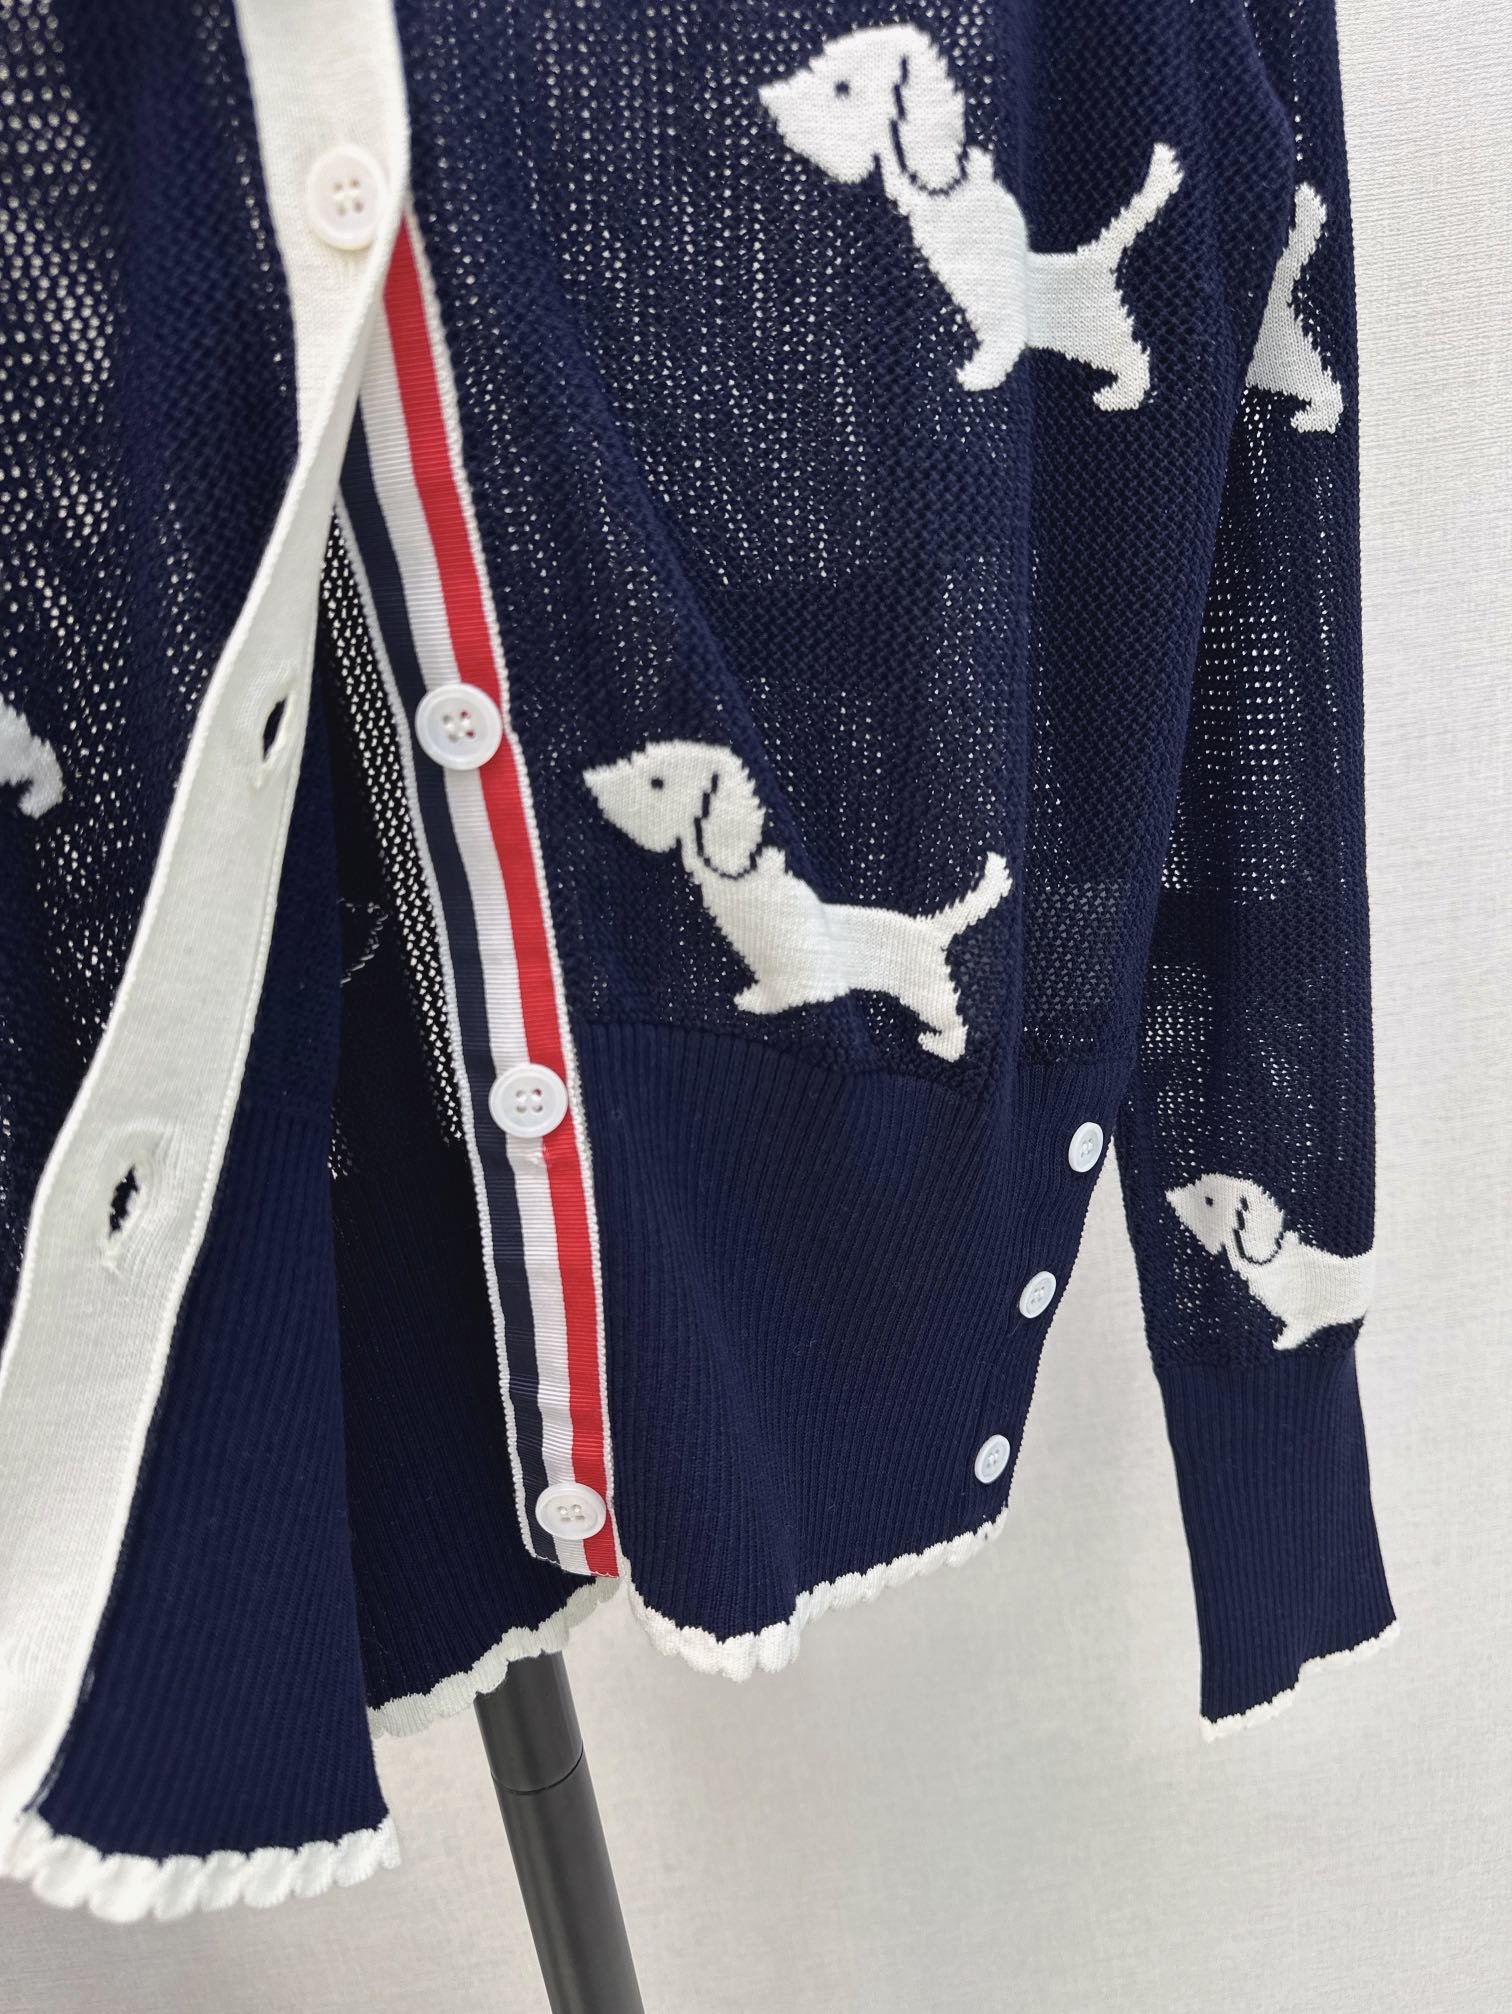 独家首发TB24Ss春夏最新款狗狗图案织带拼接镂空针织开衫休闲百搭的日常款简约时髦拼接的织带极具有代表性